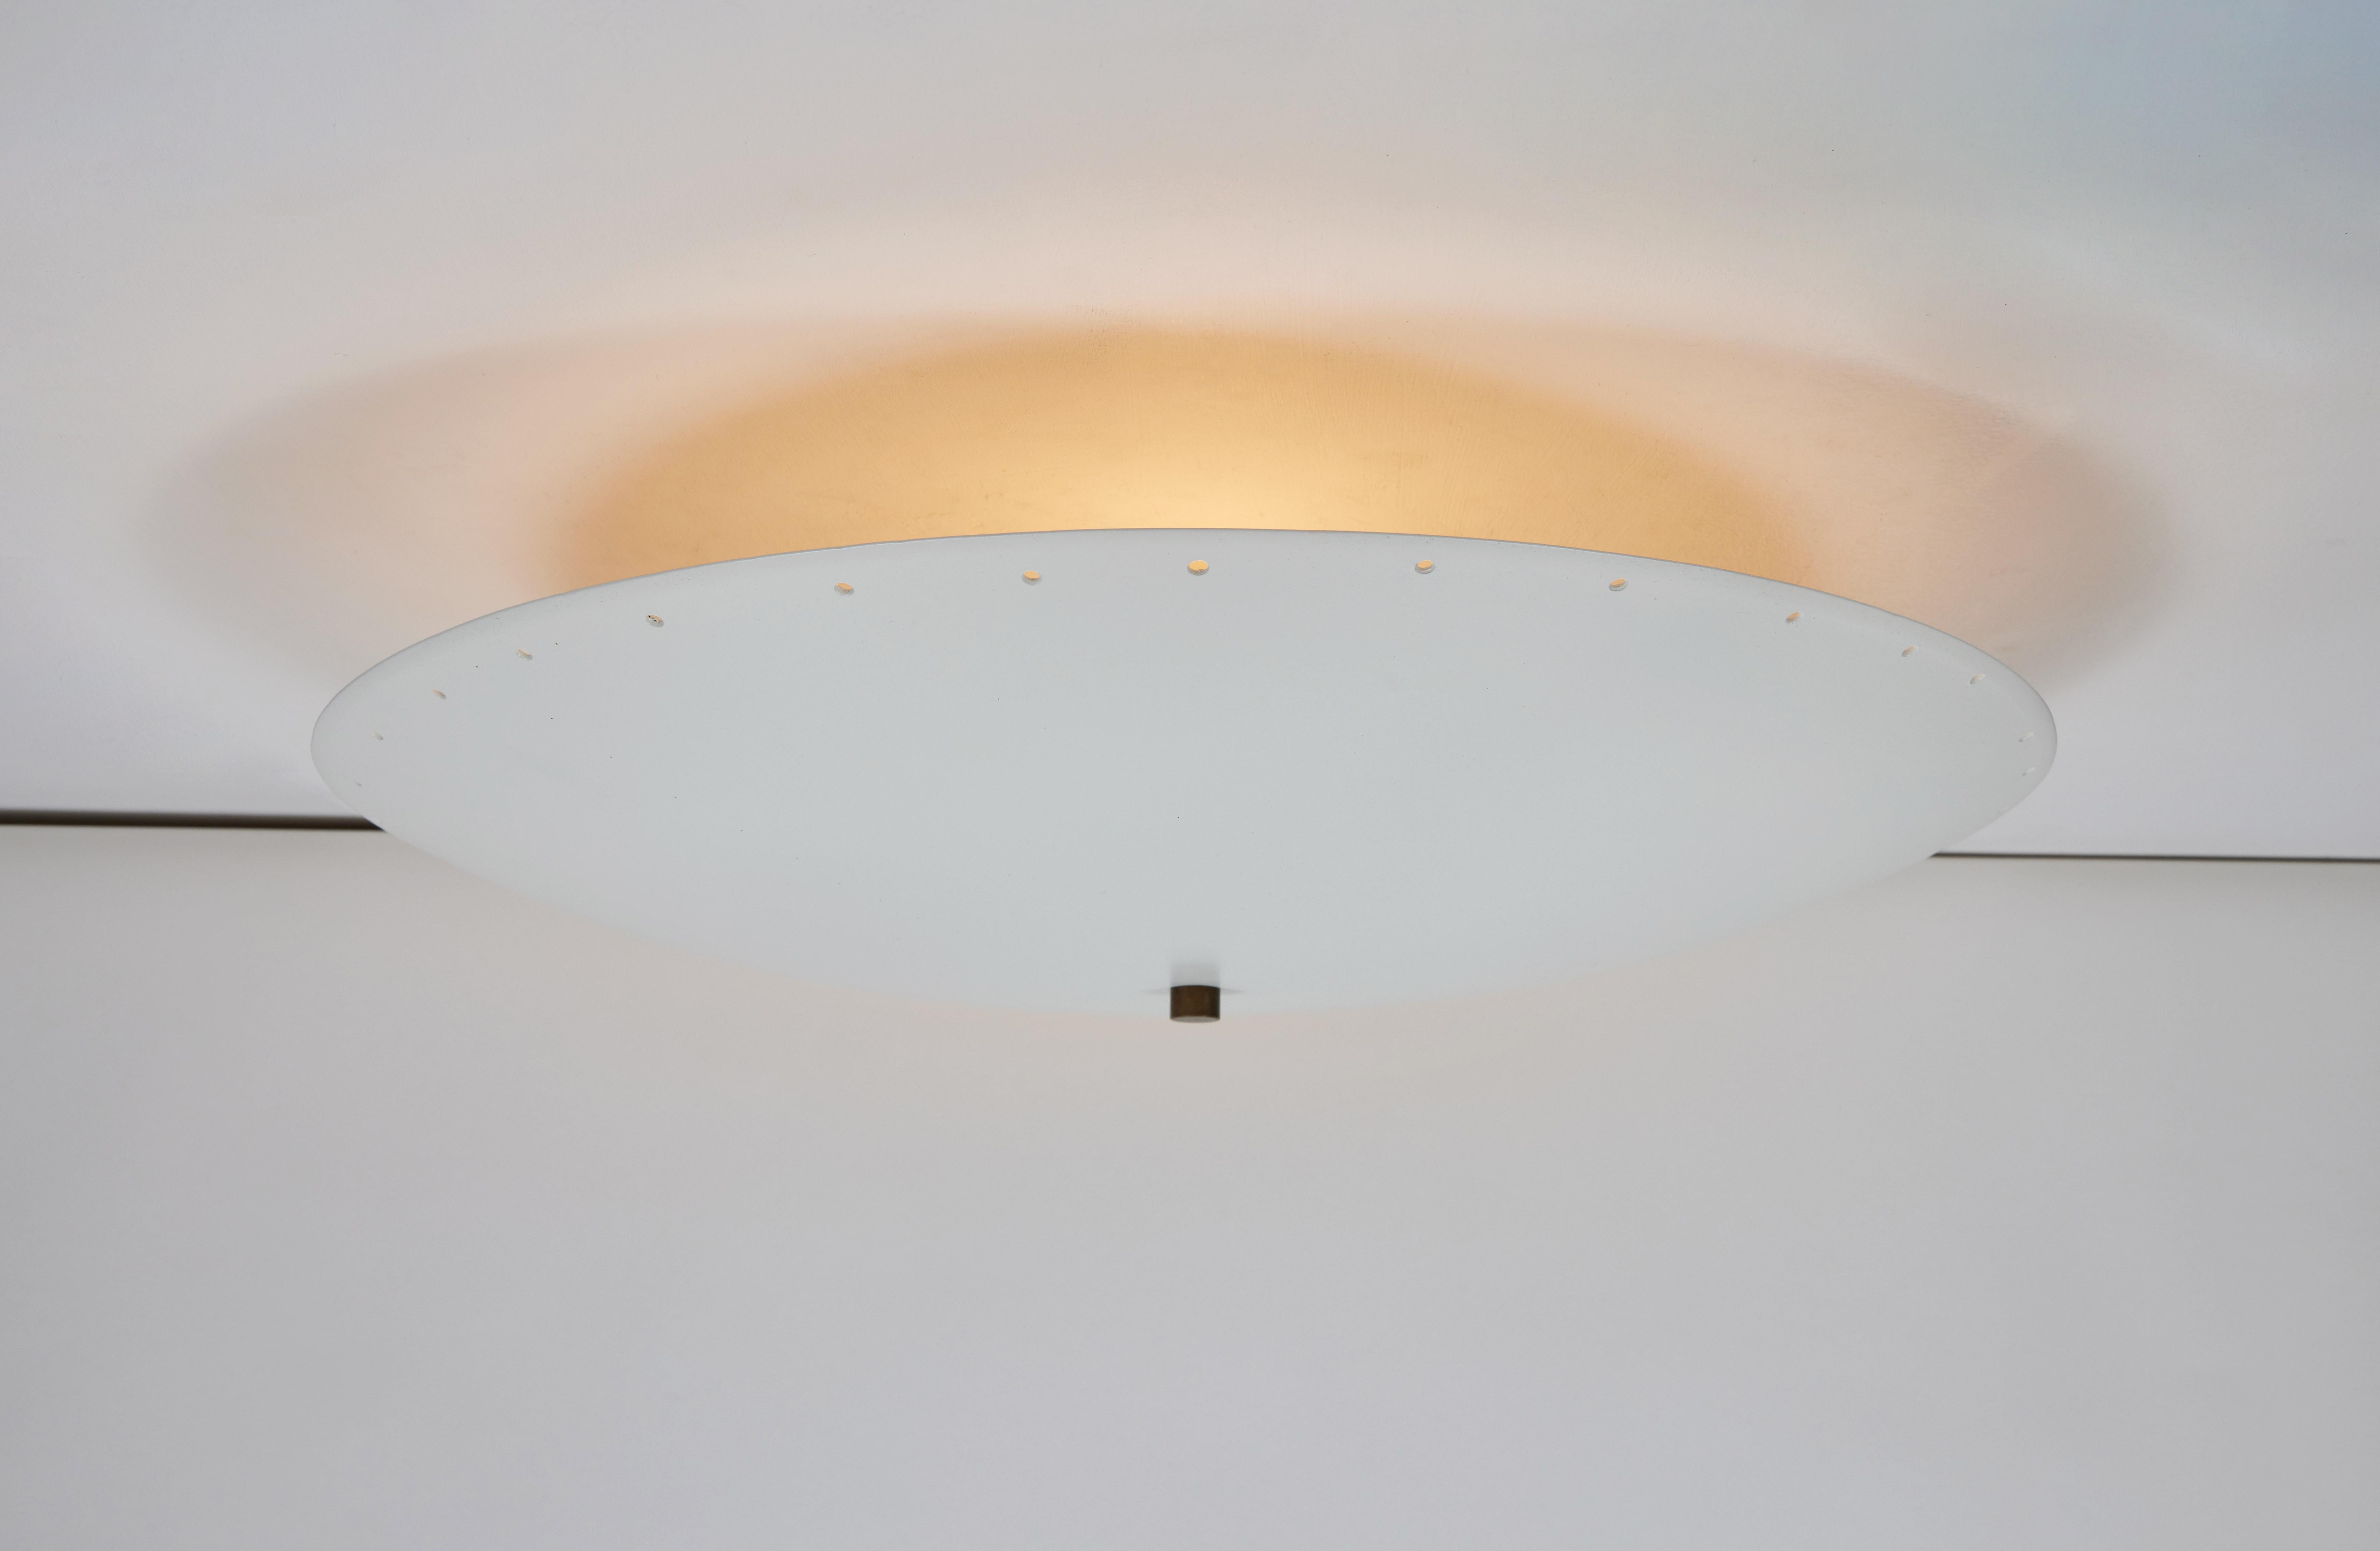 Plafonnier dôme perforé 'Nina' en blanc par Alvaro Benitez.

Fabriquées à la main par Alvaro Benitez, designer et professionnel de l'éclairage basé à Los Angeles, ces lampes de bureau très raffinées rappellent les designs italiens emblématiques du